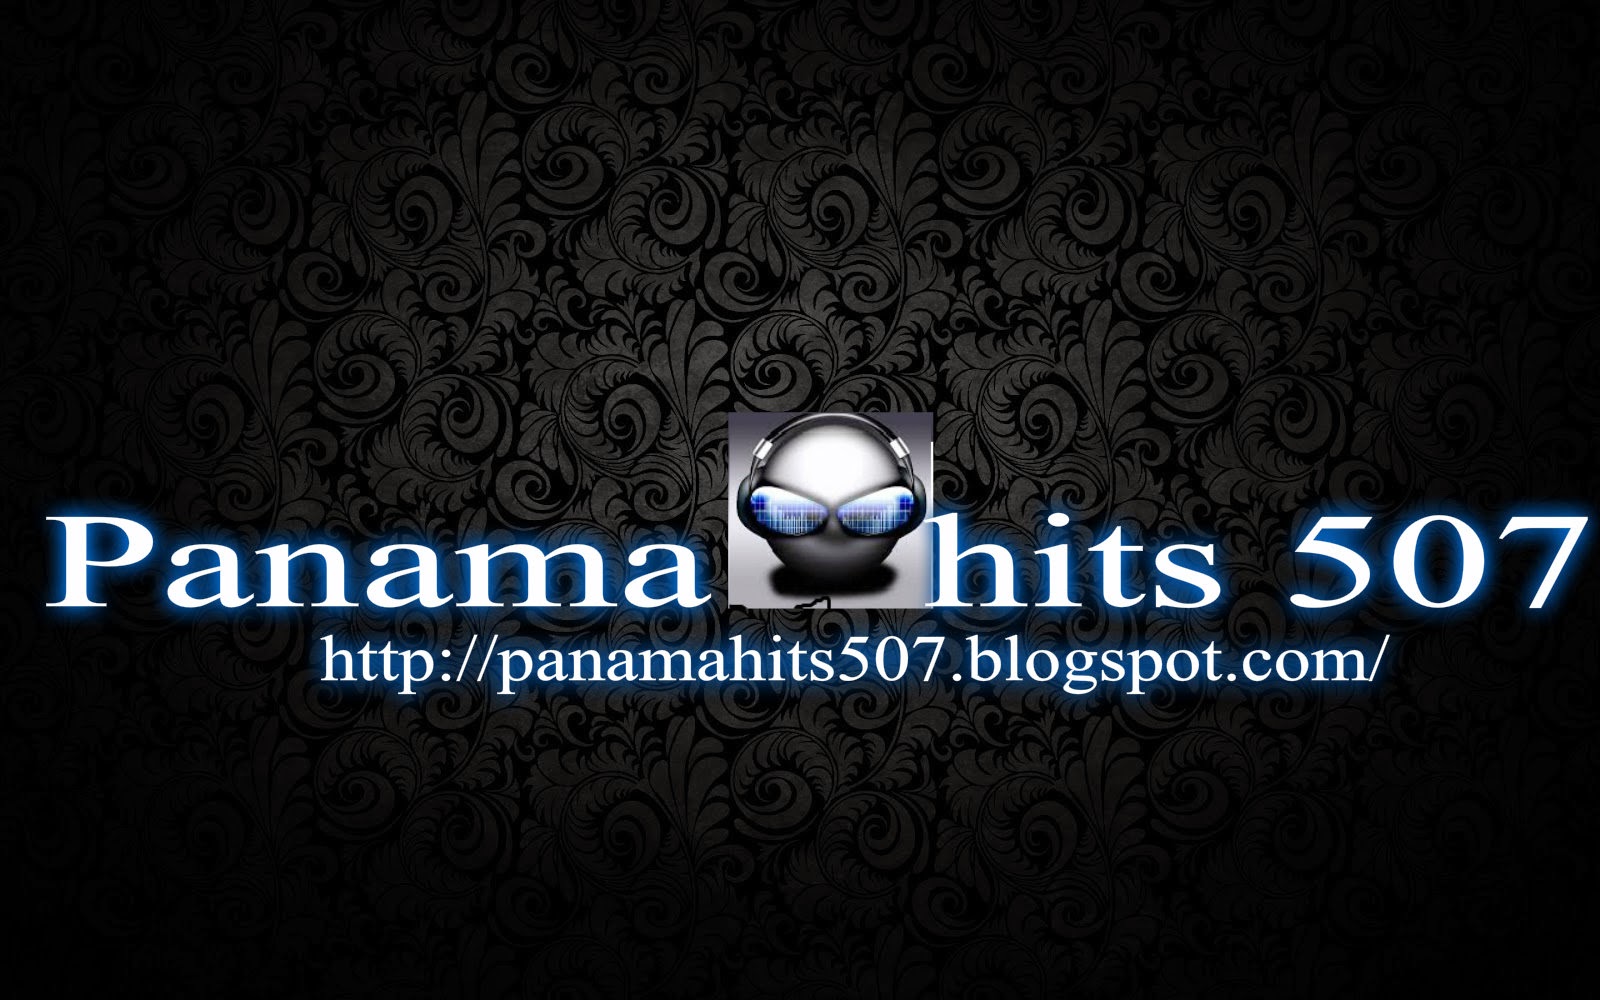 Bienvenidos a panama hits 507